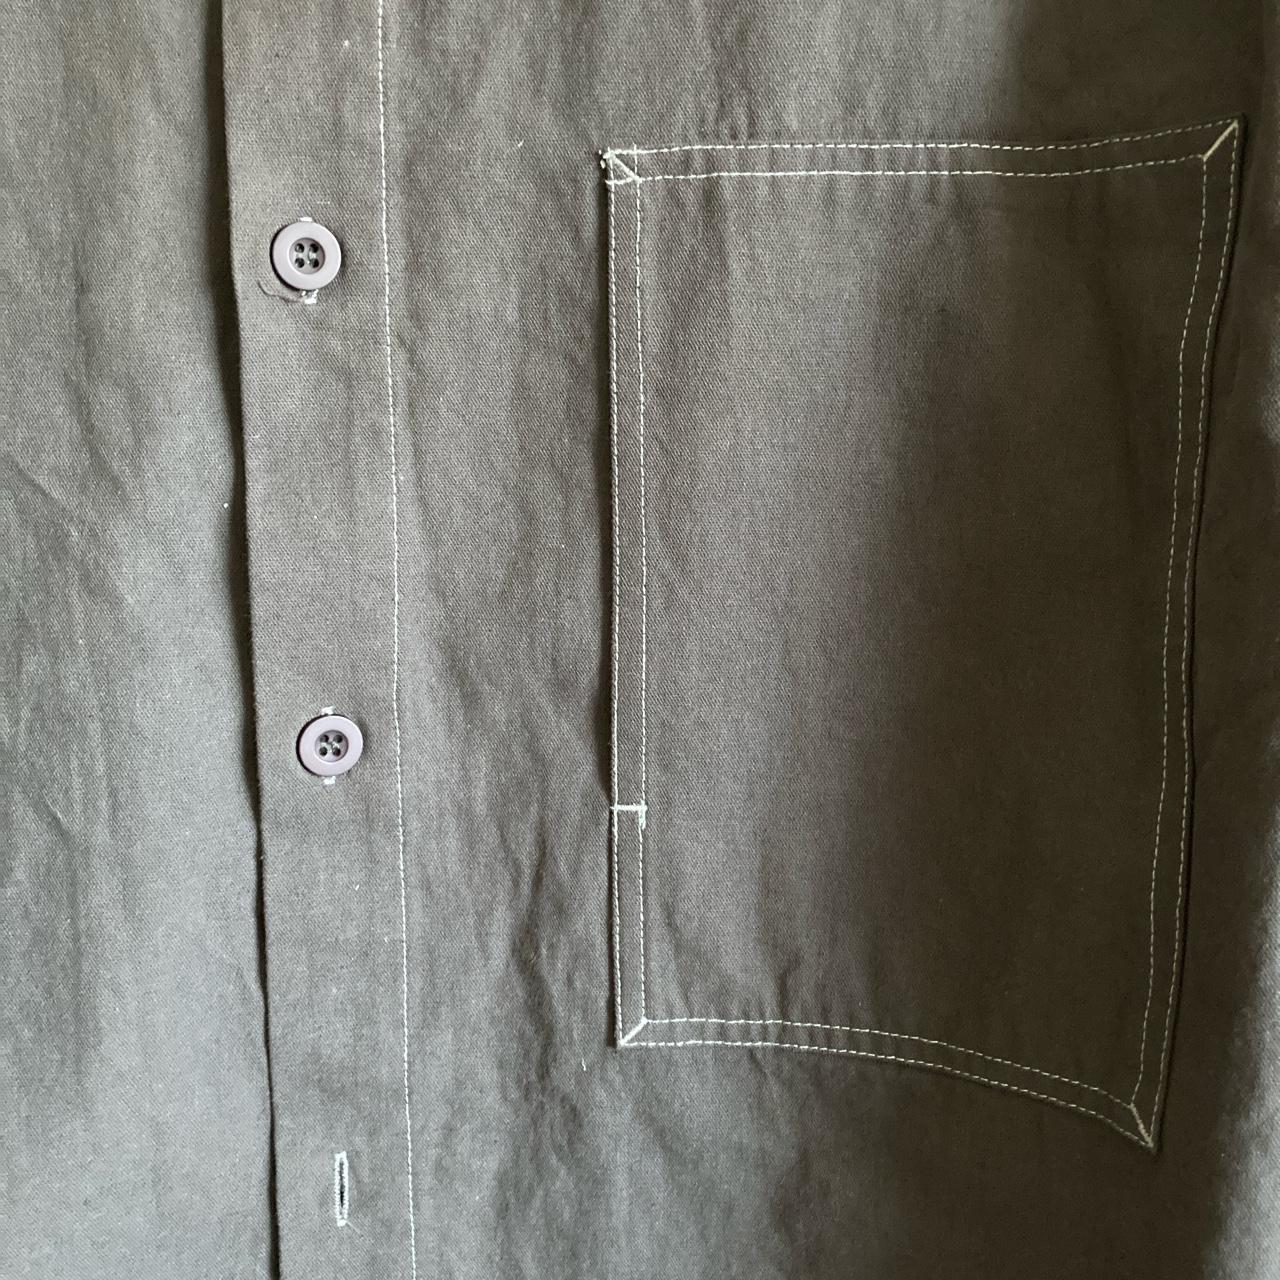 Product Image 3 - Satta overshirt 
Large chest pocket